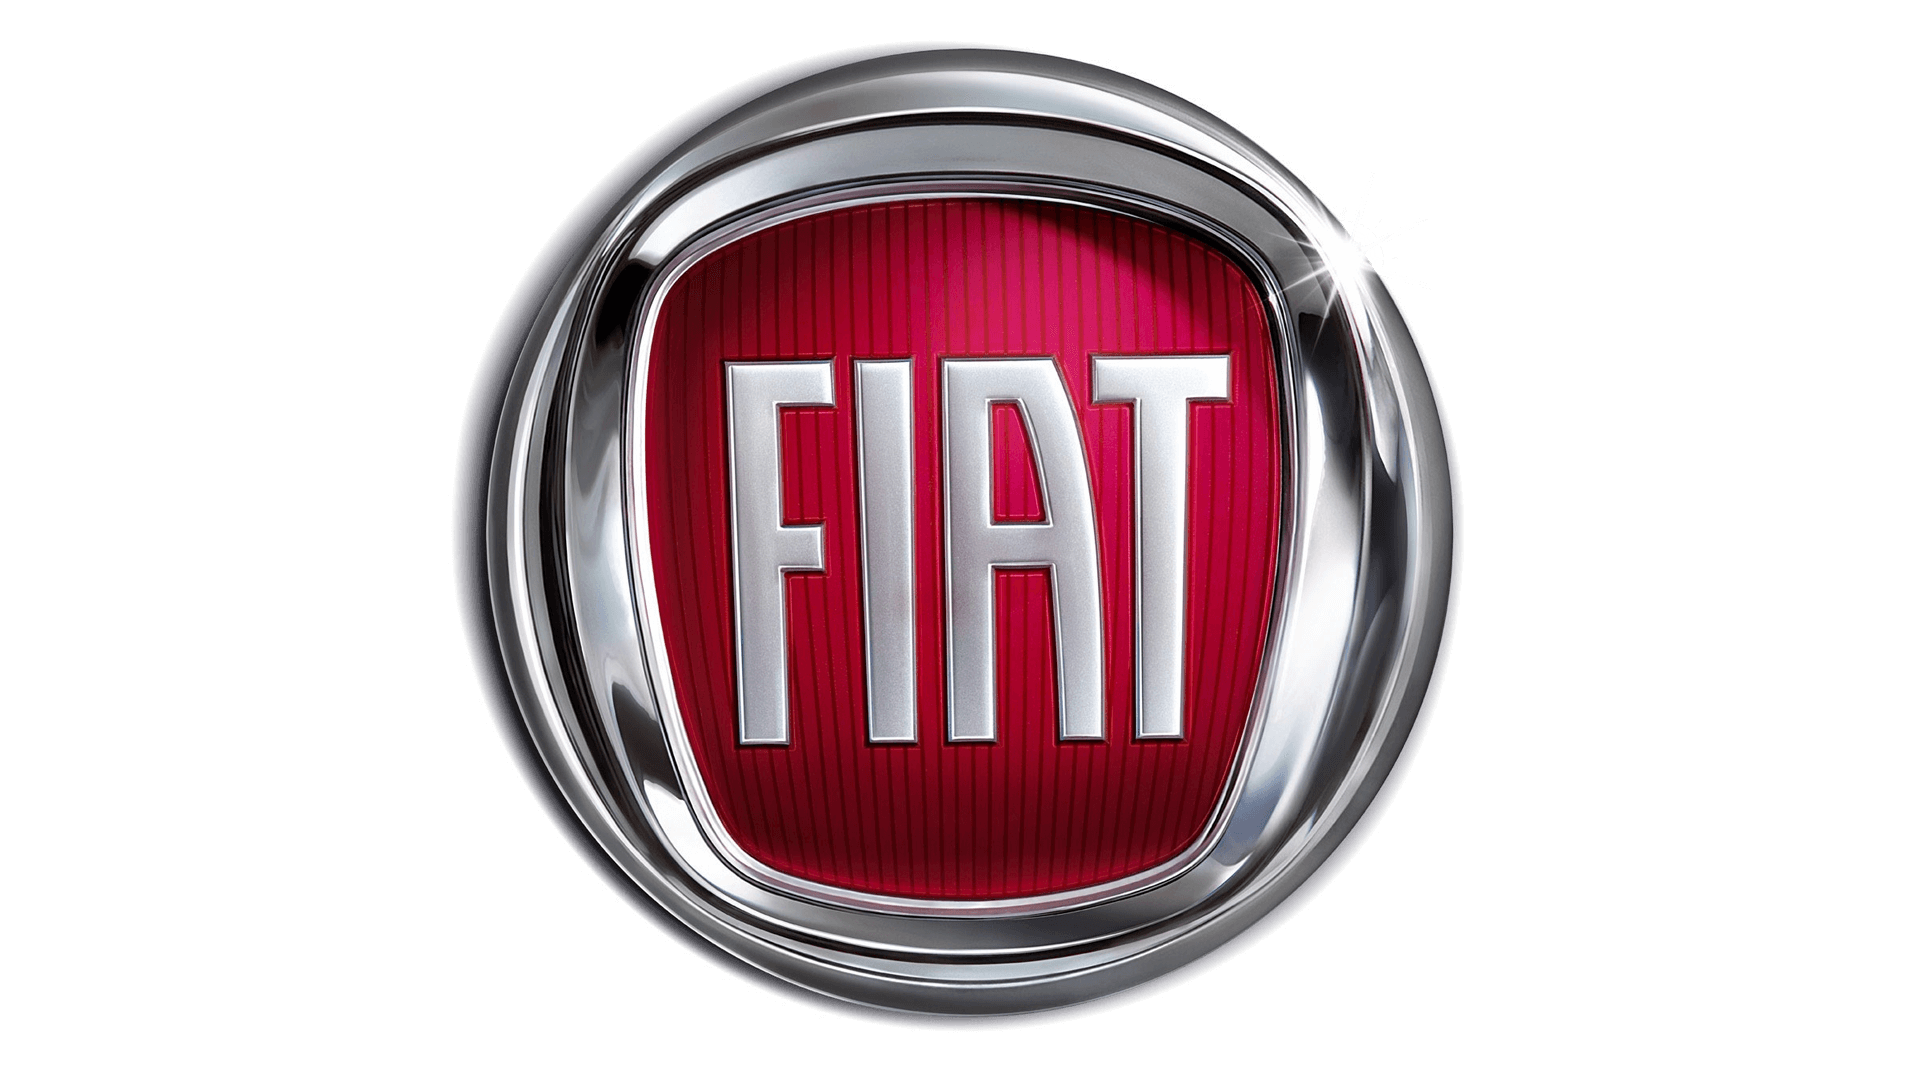 Fiat-logo-2006-1920x1080-1